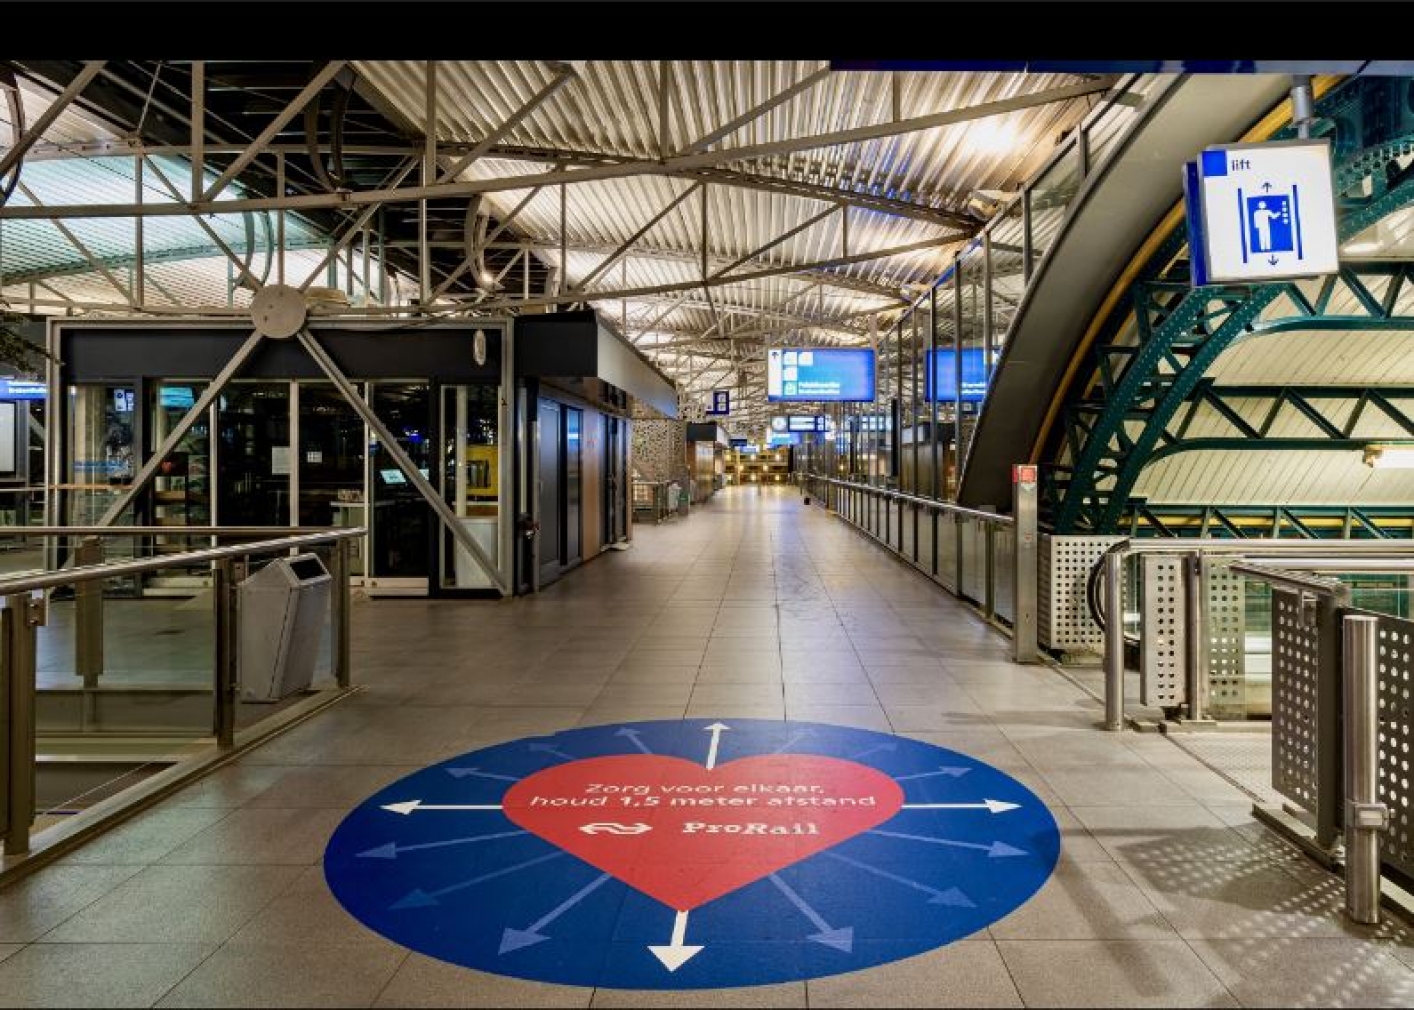 foto van stationstraverse met grote sticker op de grond met tekst 'Zorg voor elkaar, houd 1,5 m afstand'